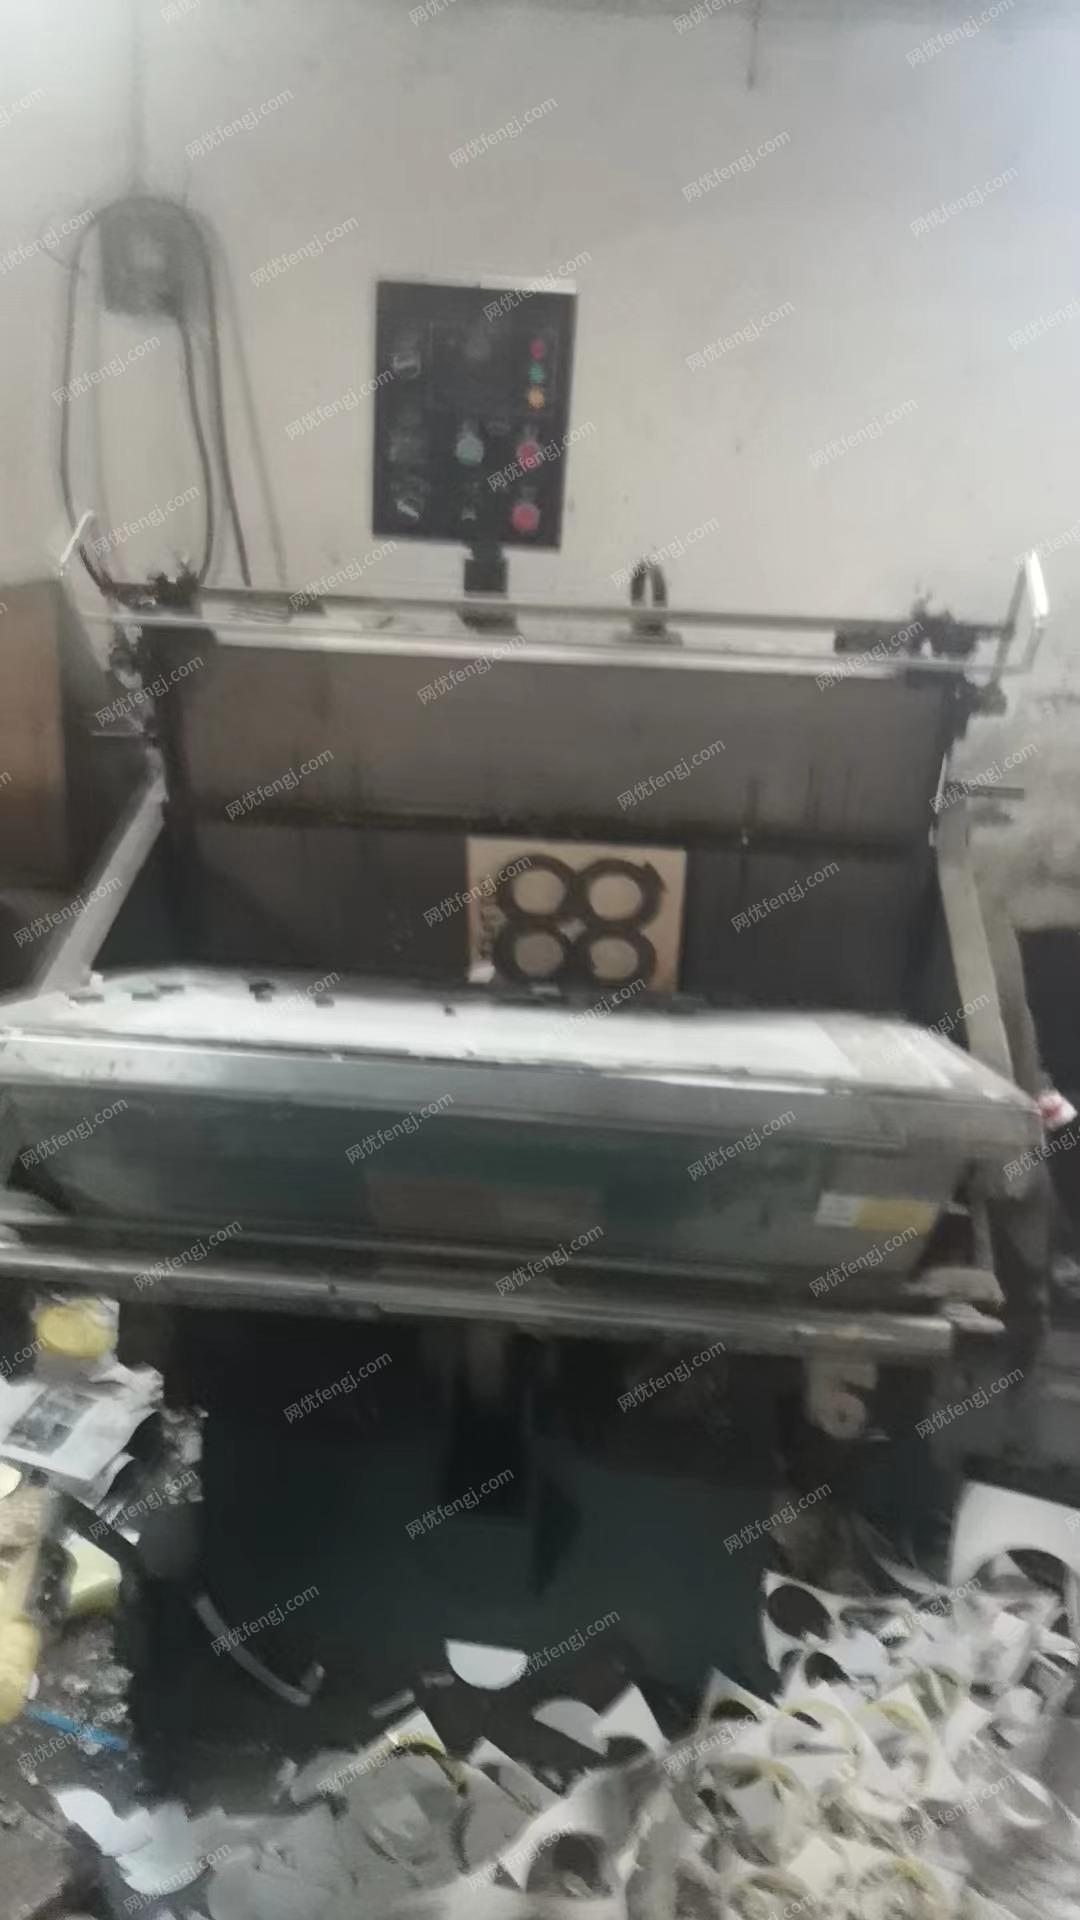 印刷厂处理14年营口4色大4开印刷机、老　虎嘴模切机、2头装订机、具体看图片